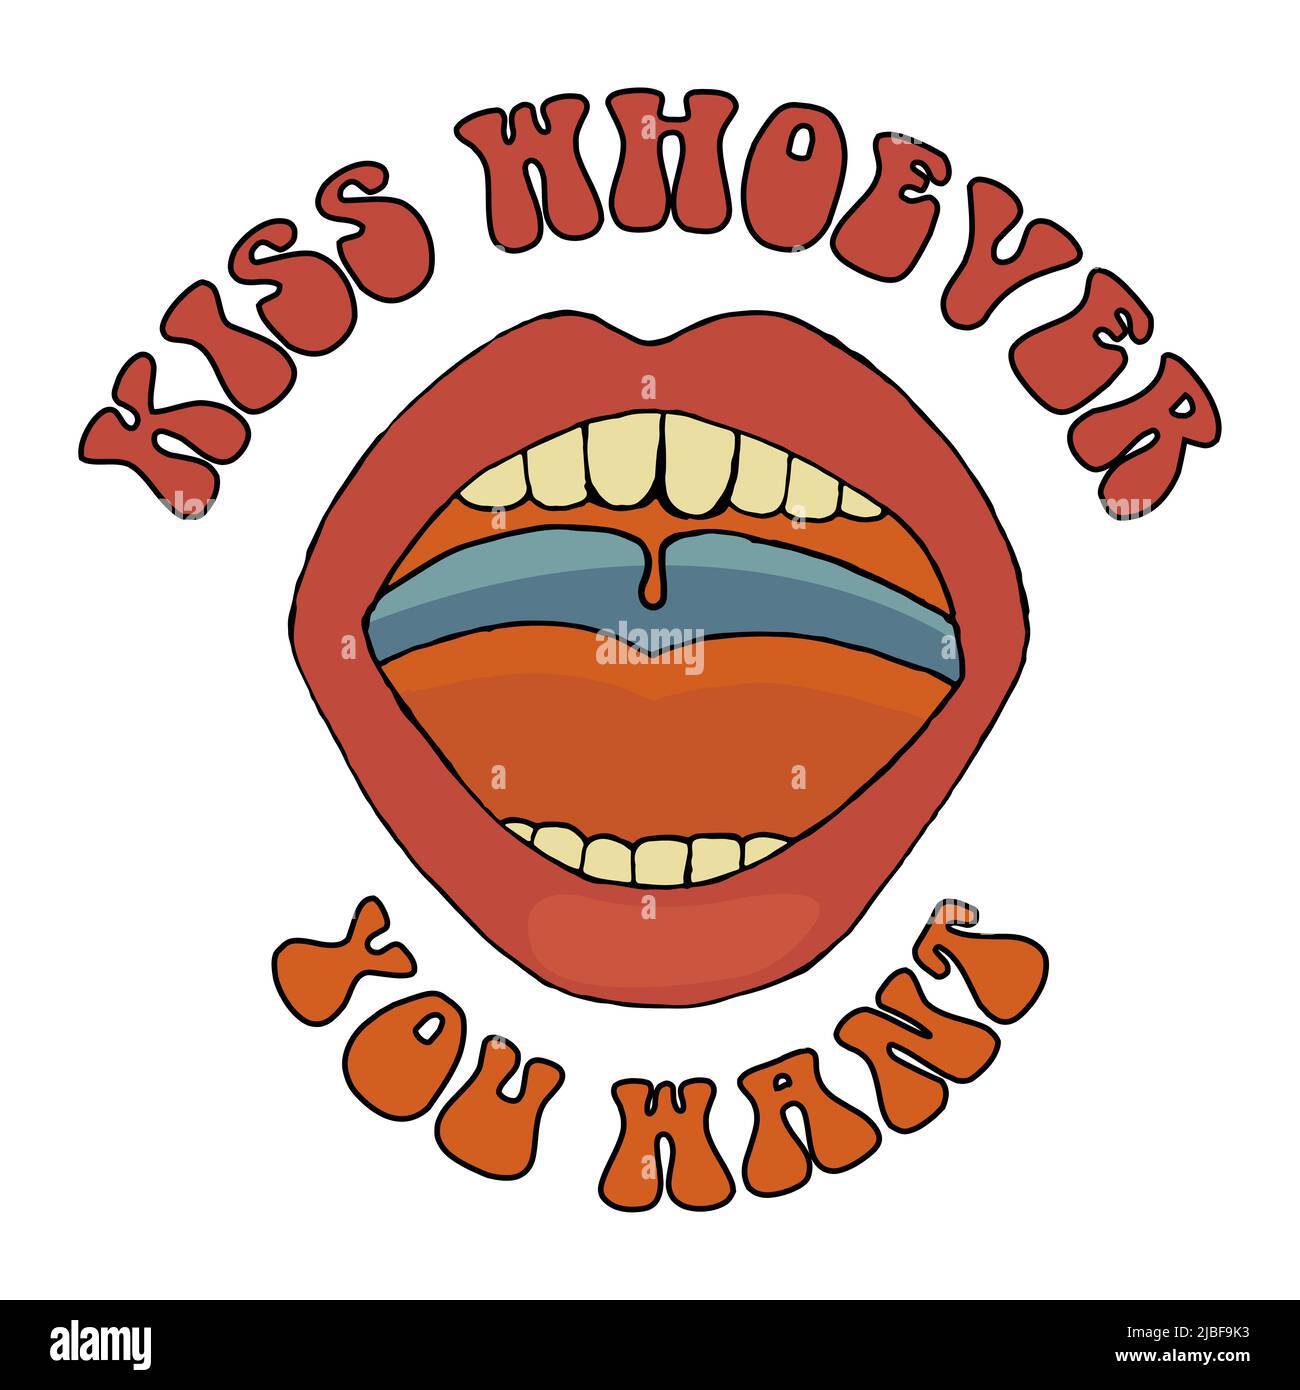 KiSS Whhoever You Want, Journée internationale de la femme. 8th mars. Le concept du mouvement d'autonomisation des femmes Banque D'Images